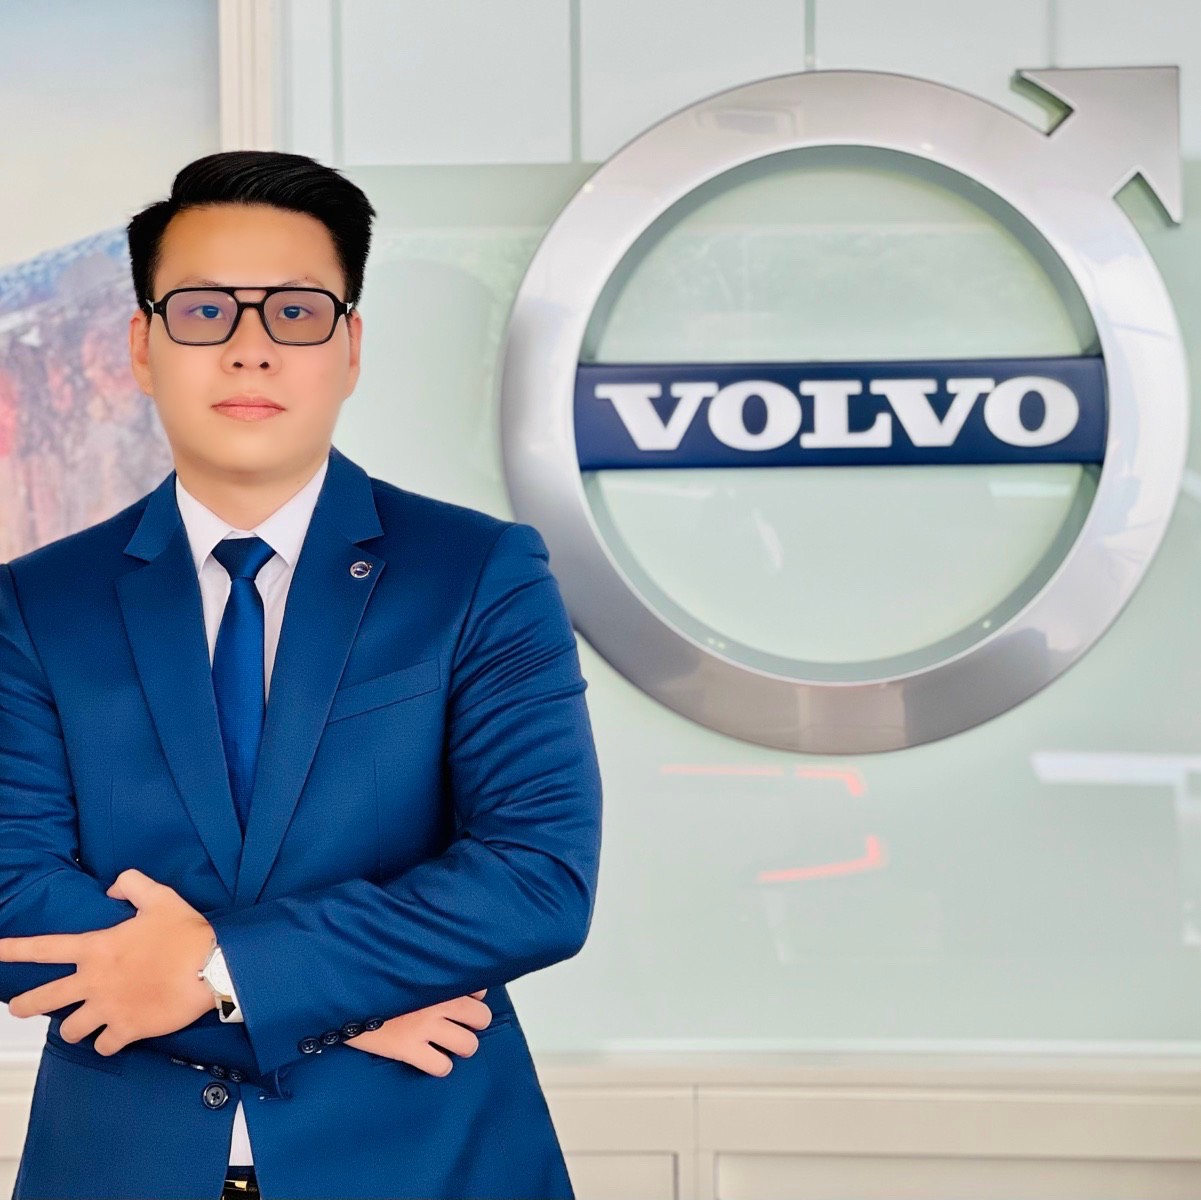 Mr Văn Volvo